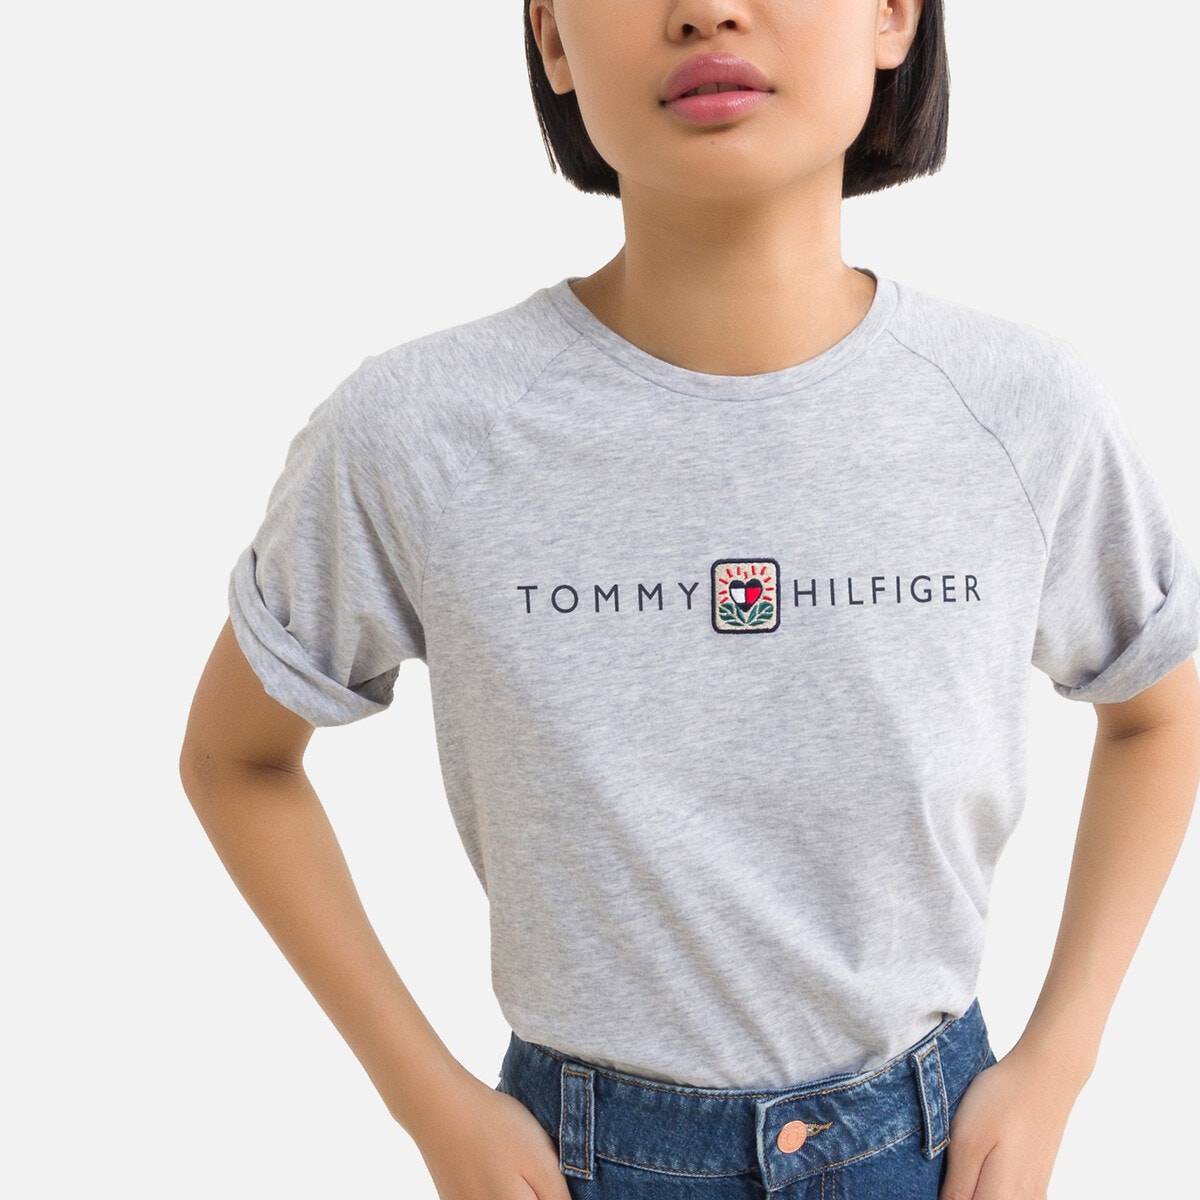 ΠΑΙΔΙ | Μπλούζες & Πουκάμισα | T-shirts T-shirt από οργανικό βαμβάκι, 10 - 16 ετών